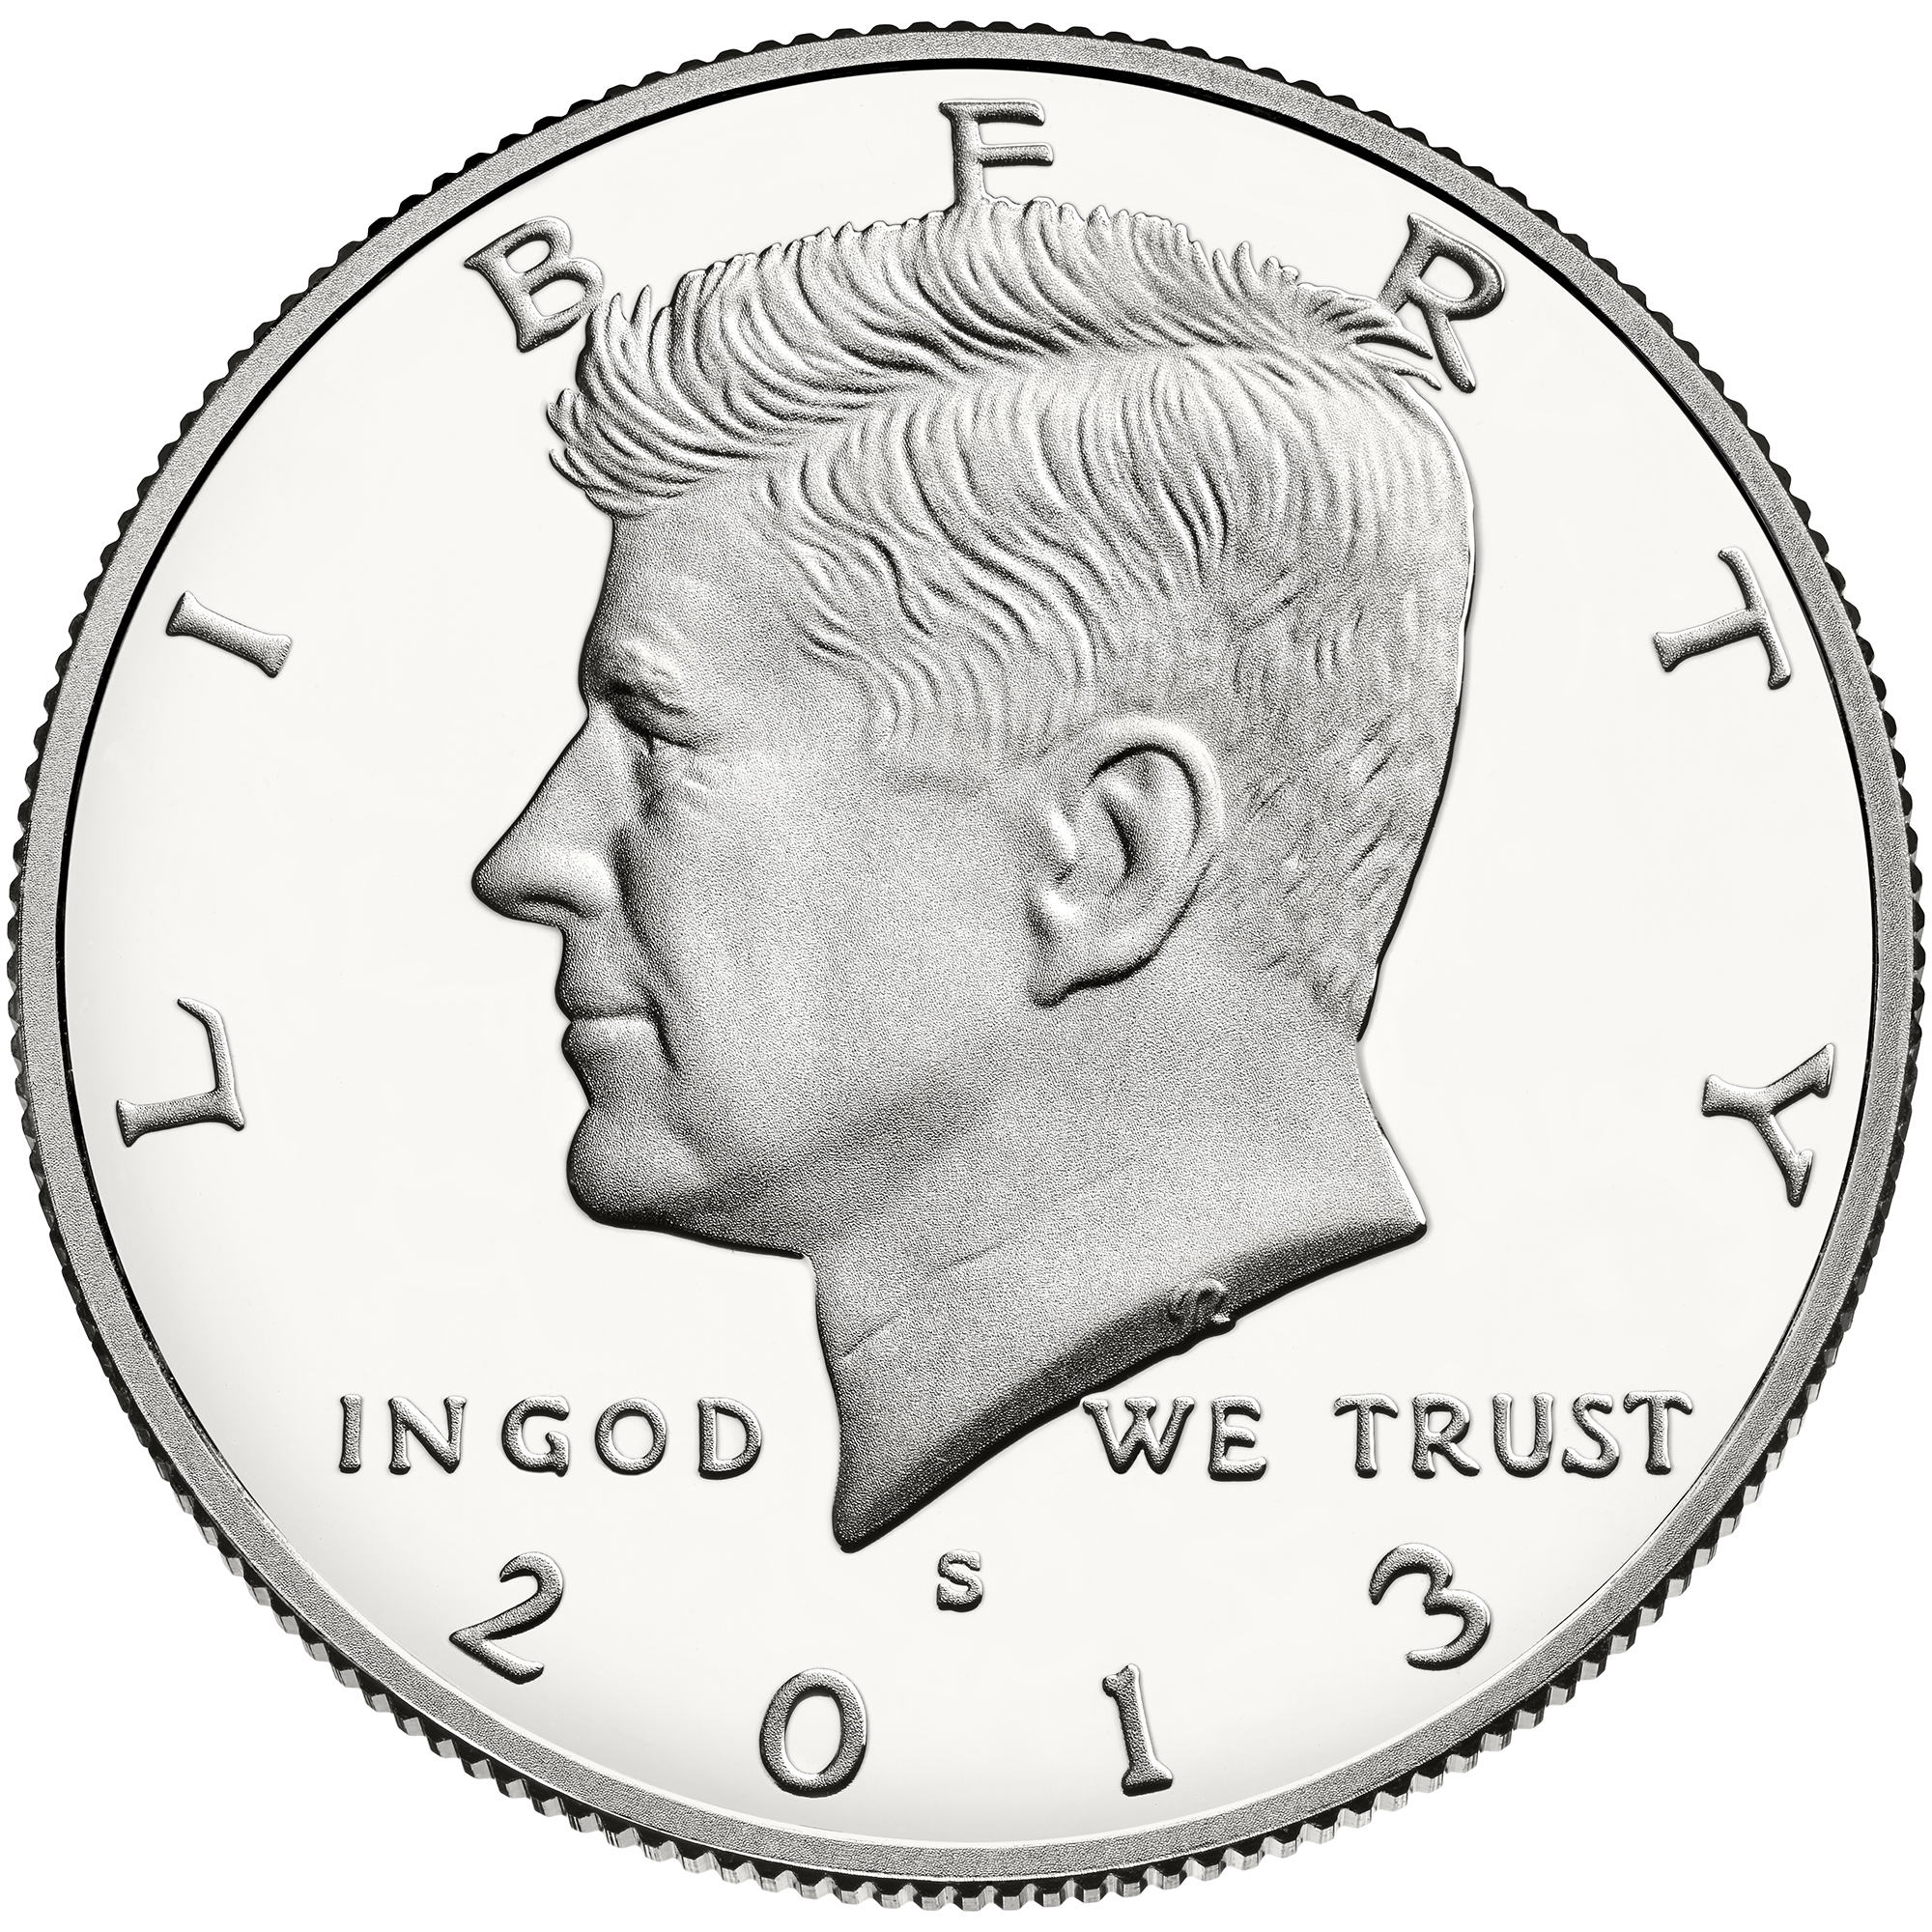 US 1/2 Dollar - Half Dollar 2003 S